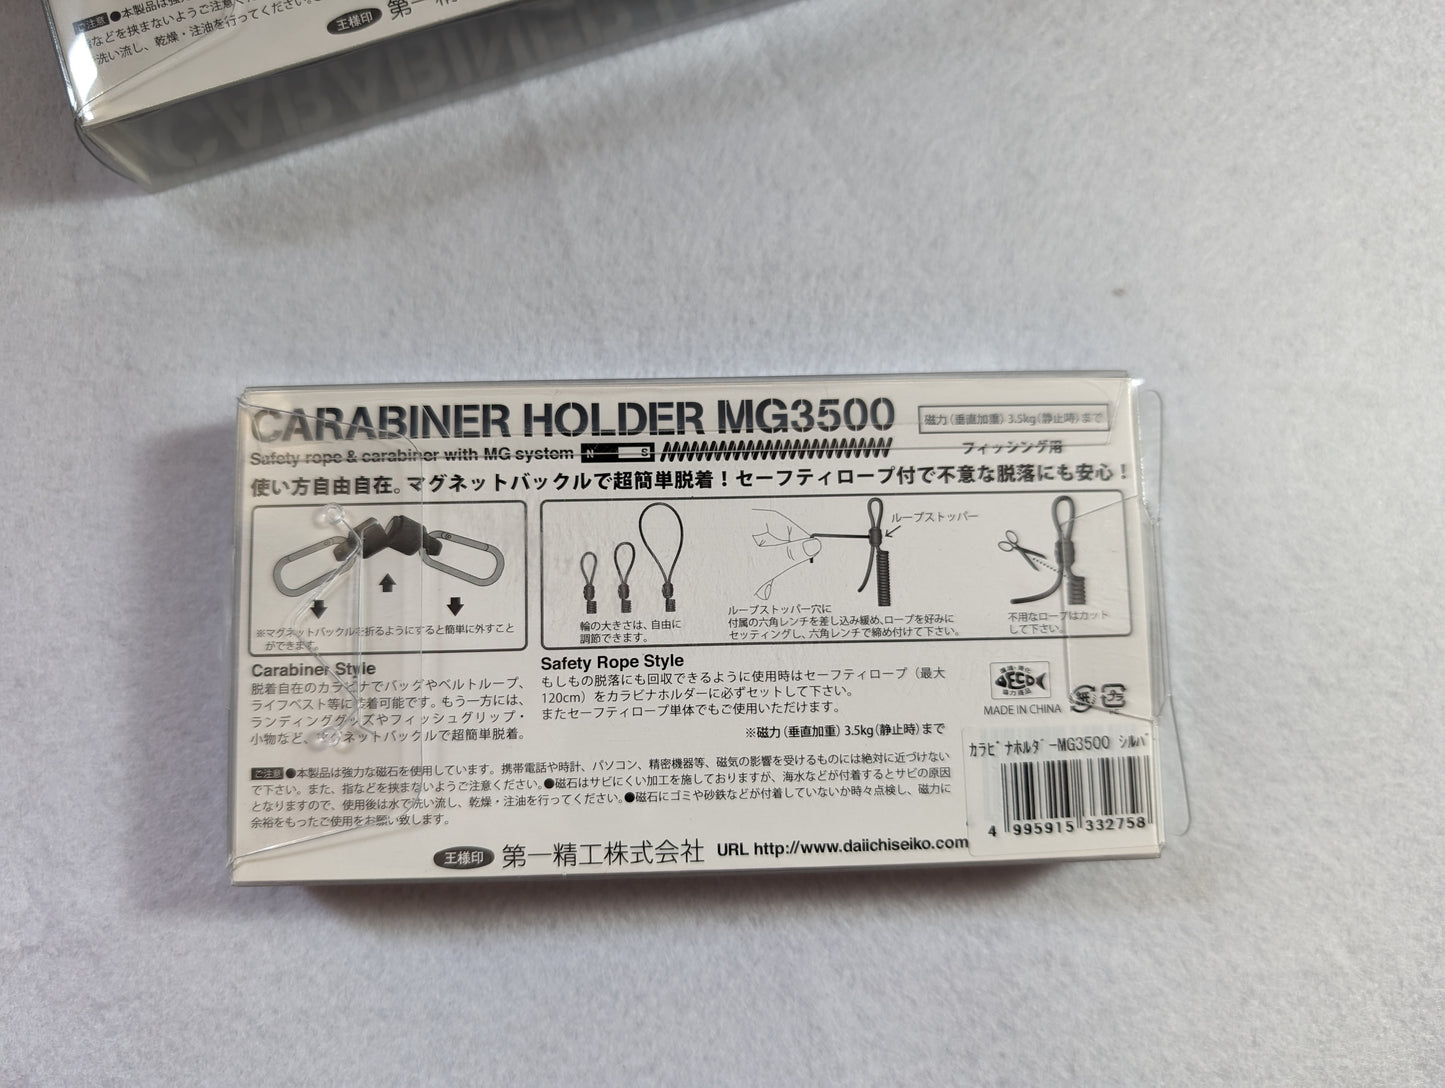 String | Daiichiseiko - Carabiner Holder